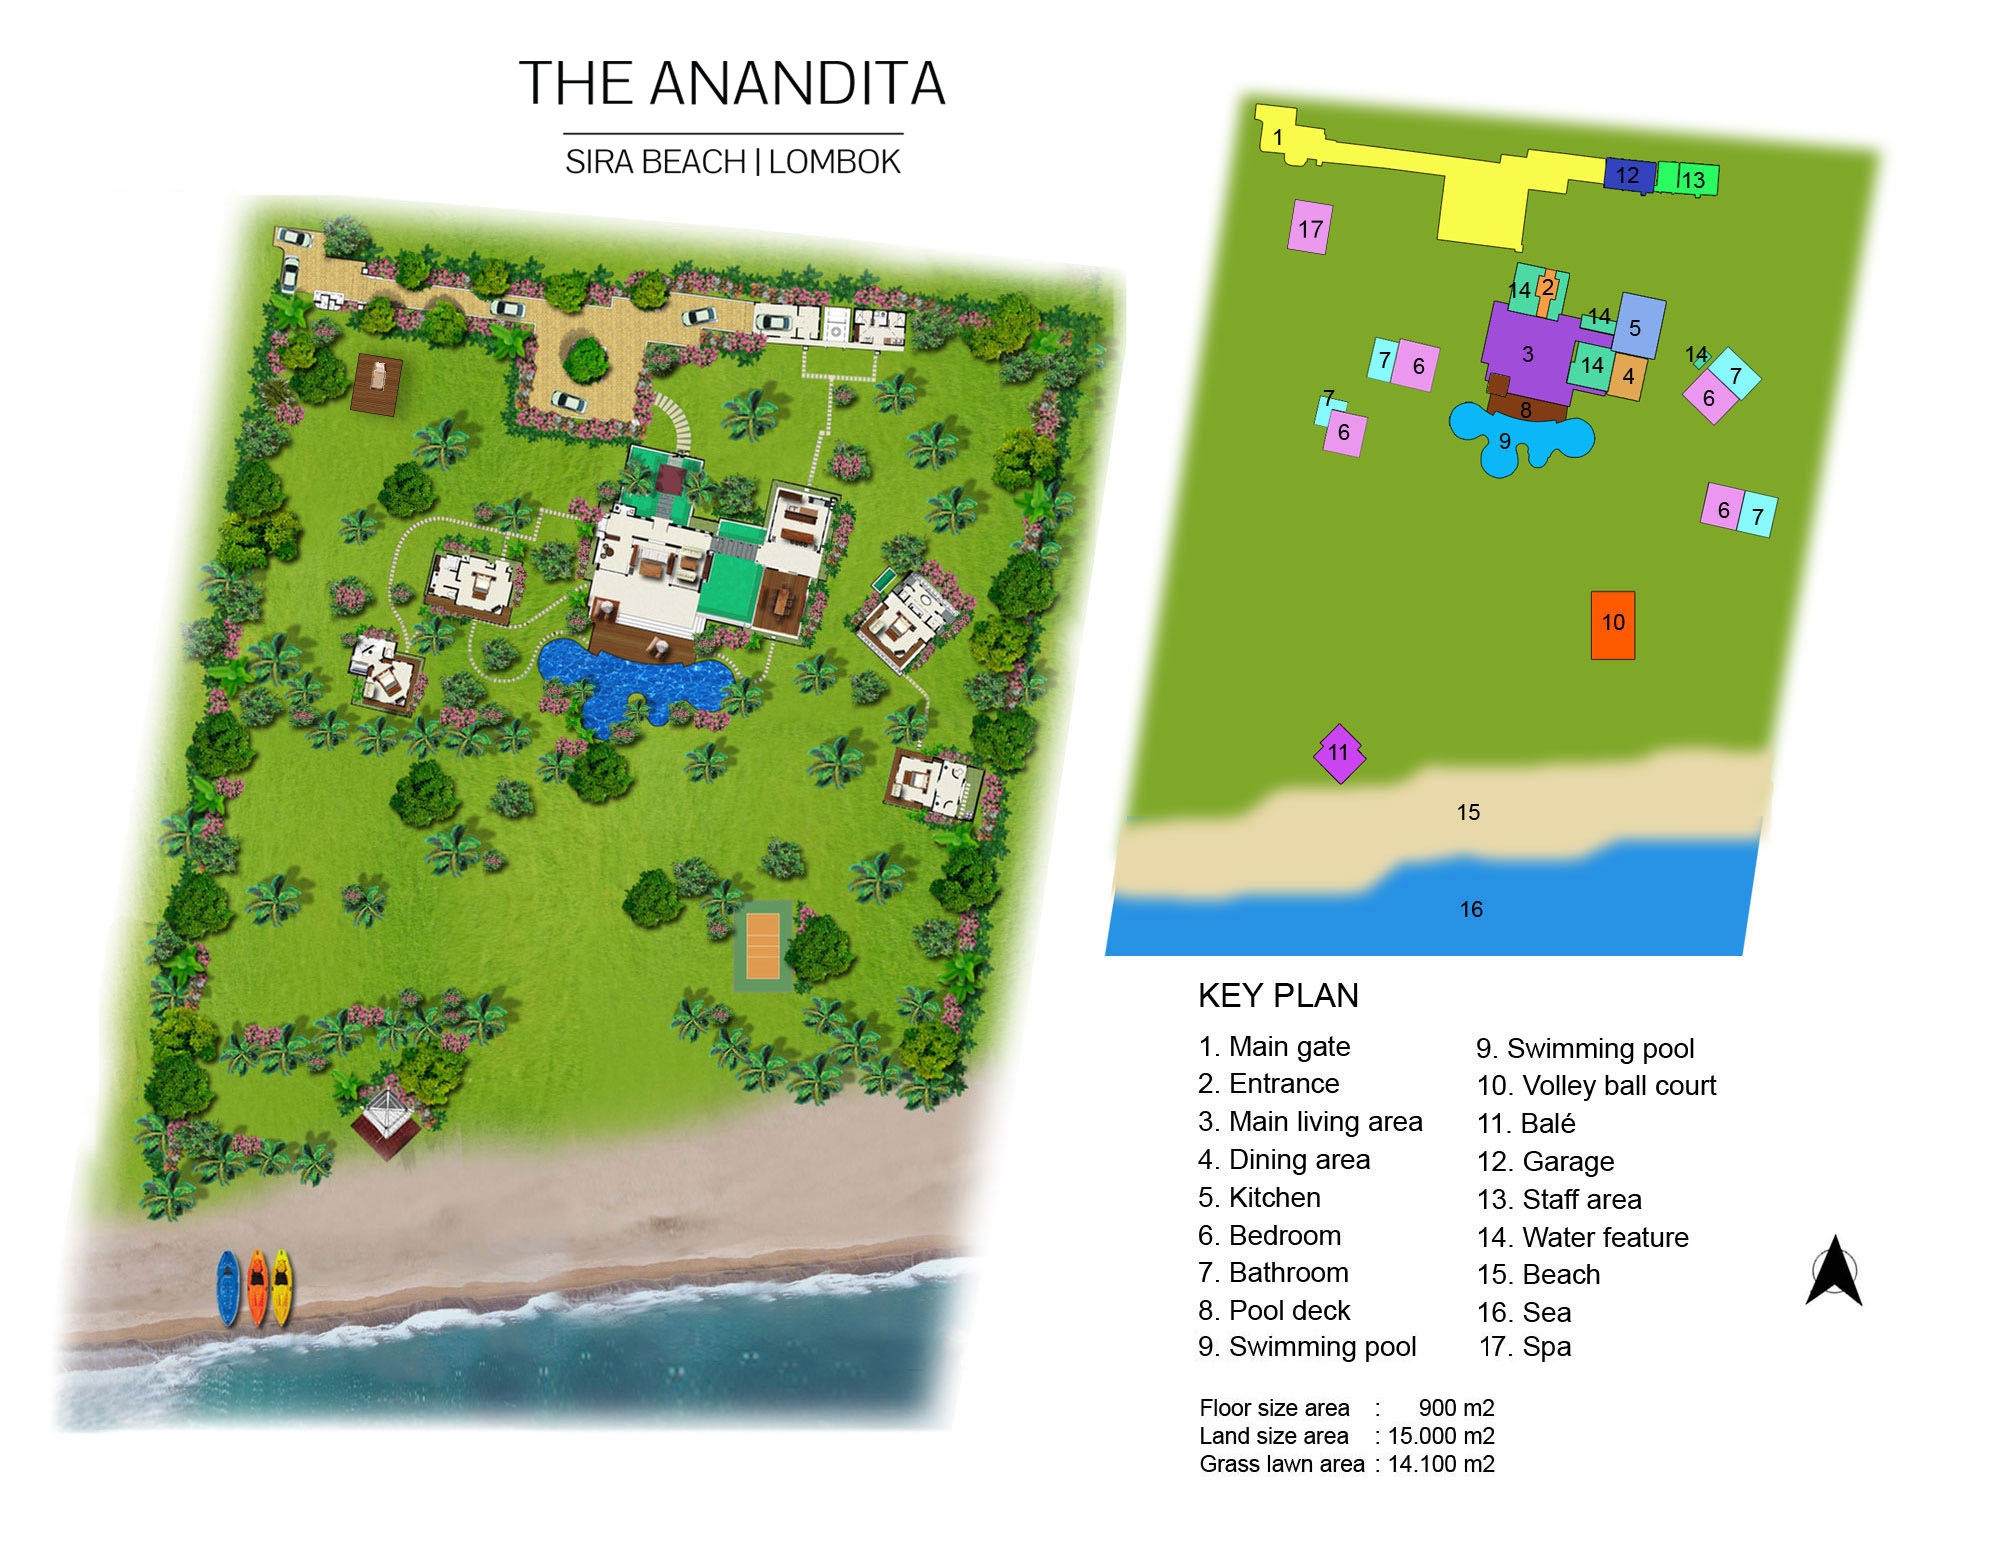 The Anandita